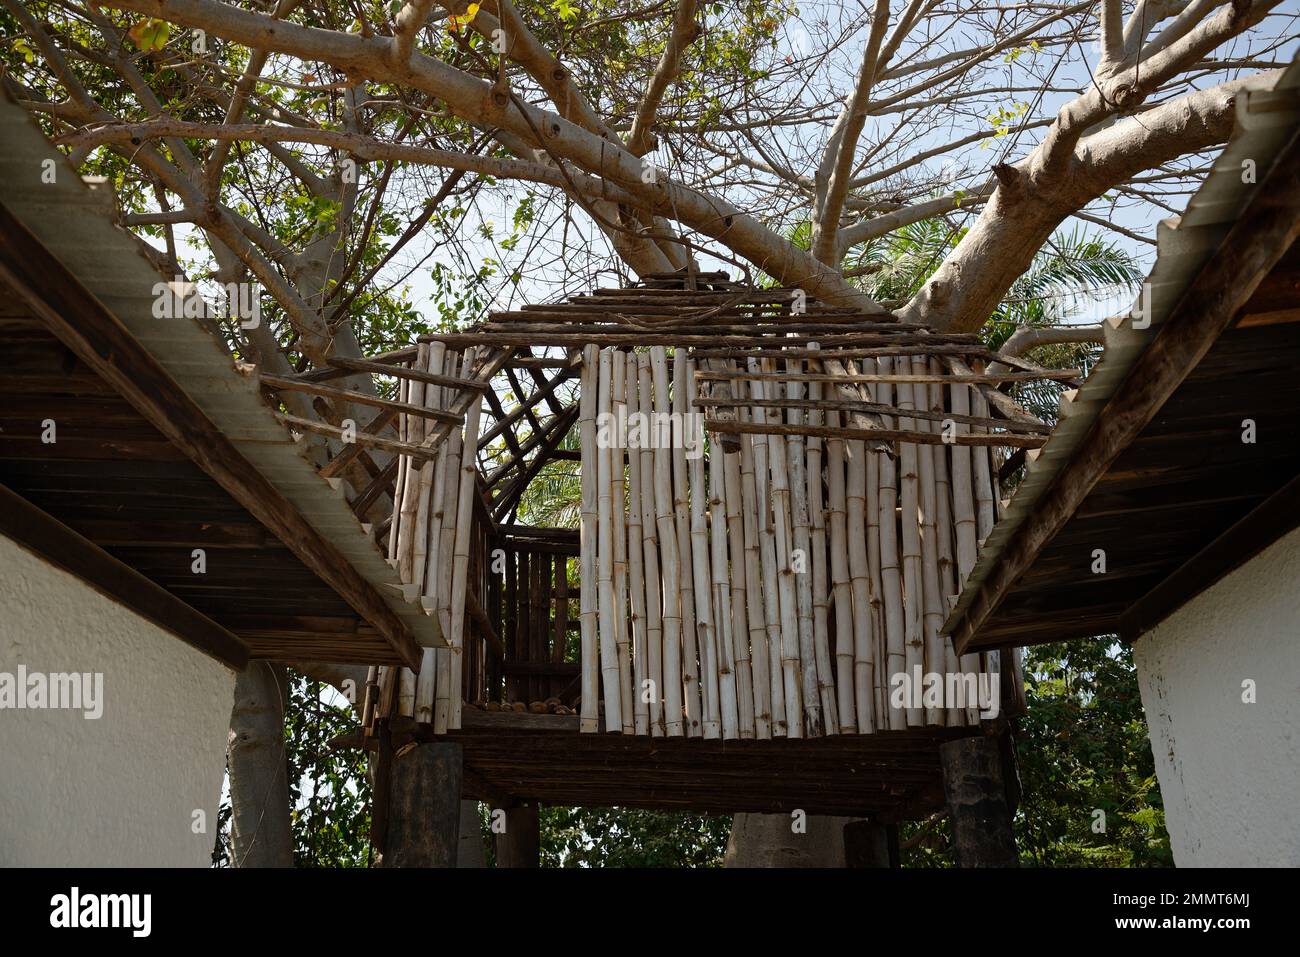 Plate-forme d'observation ou cachette dans un baobab en Gambie, Afrique de l'Ouest. Idéal pour l'observation des oiseaux. Banque D'Images